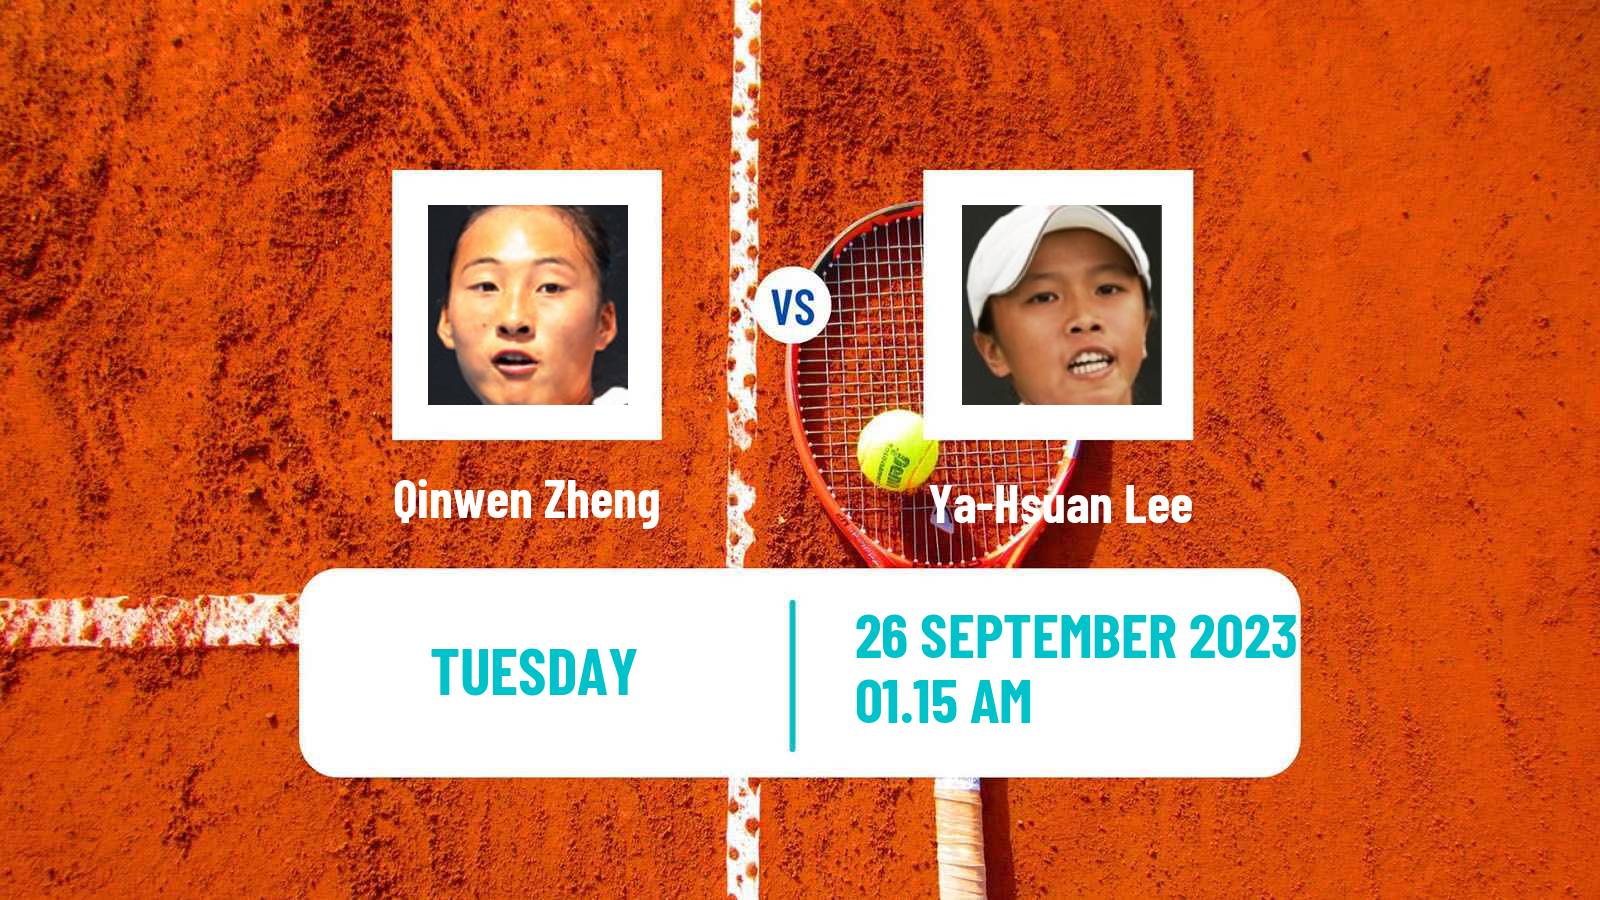 Tennis WTA Asian Games Qinwen Zheng - Ya-Hsuan Lee